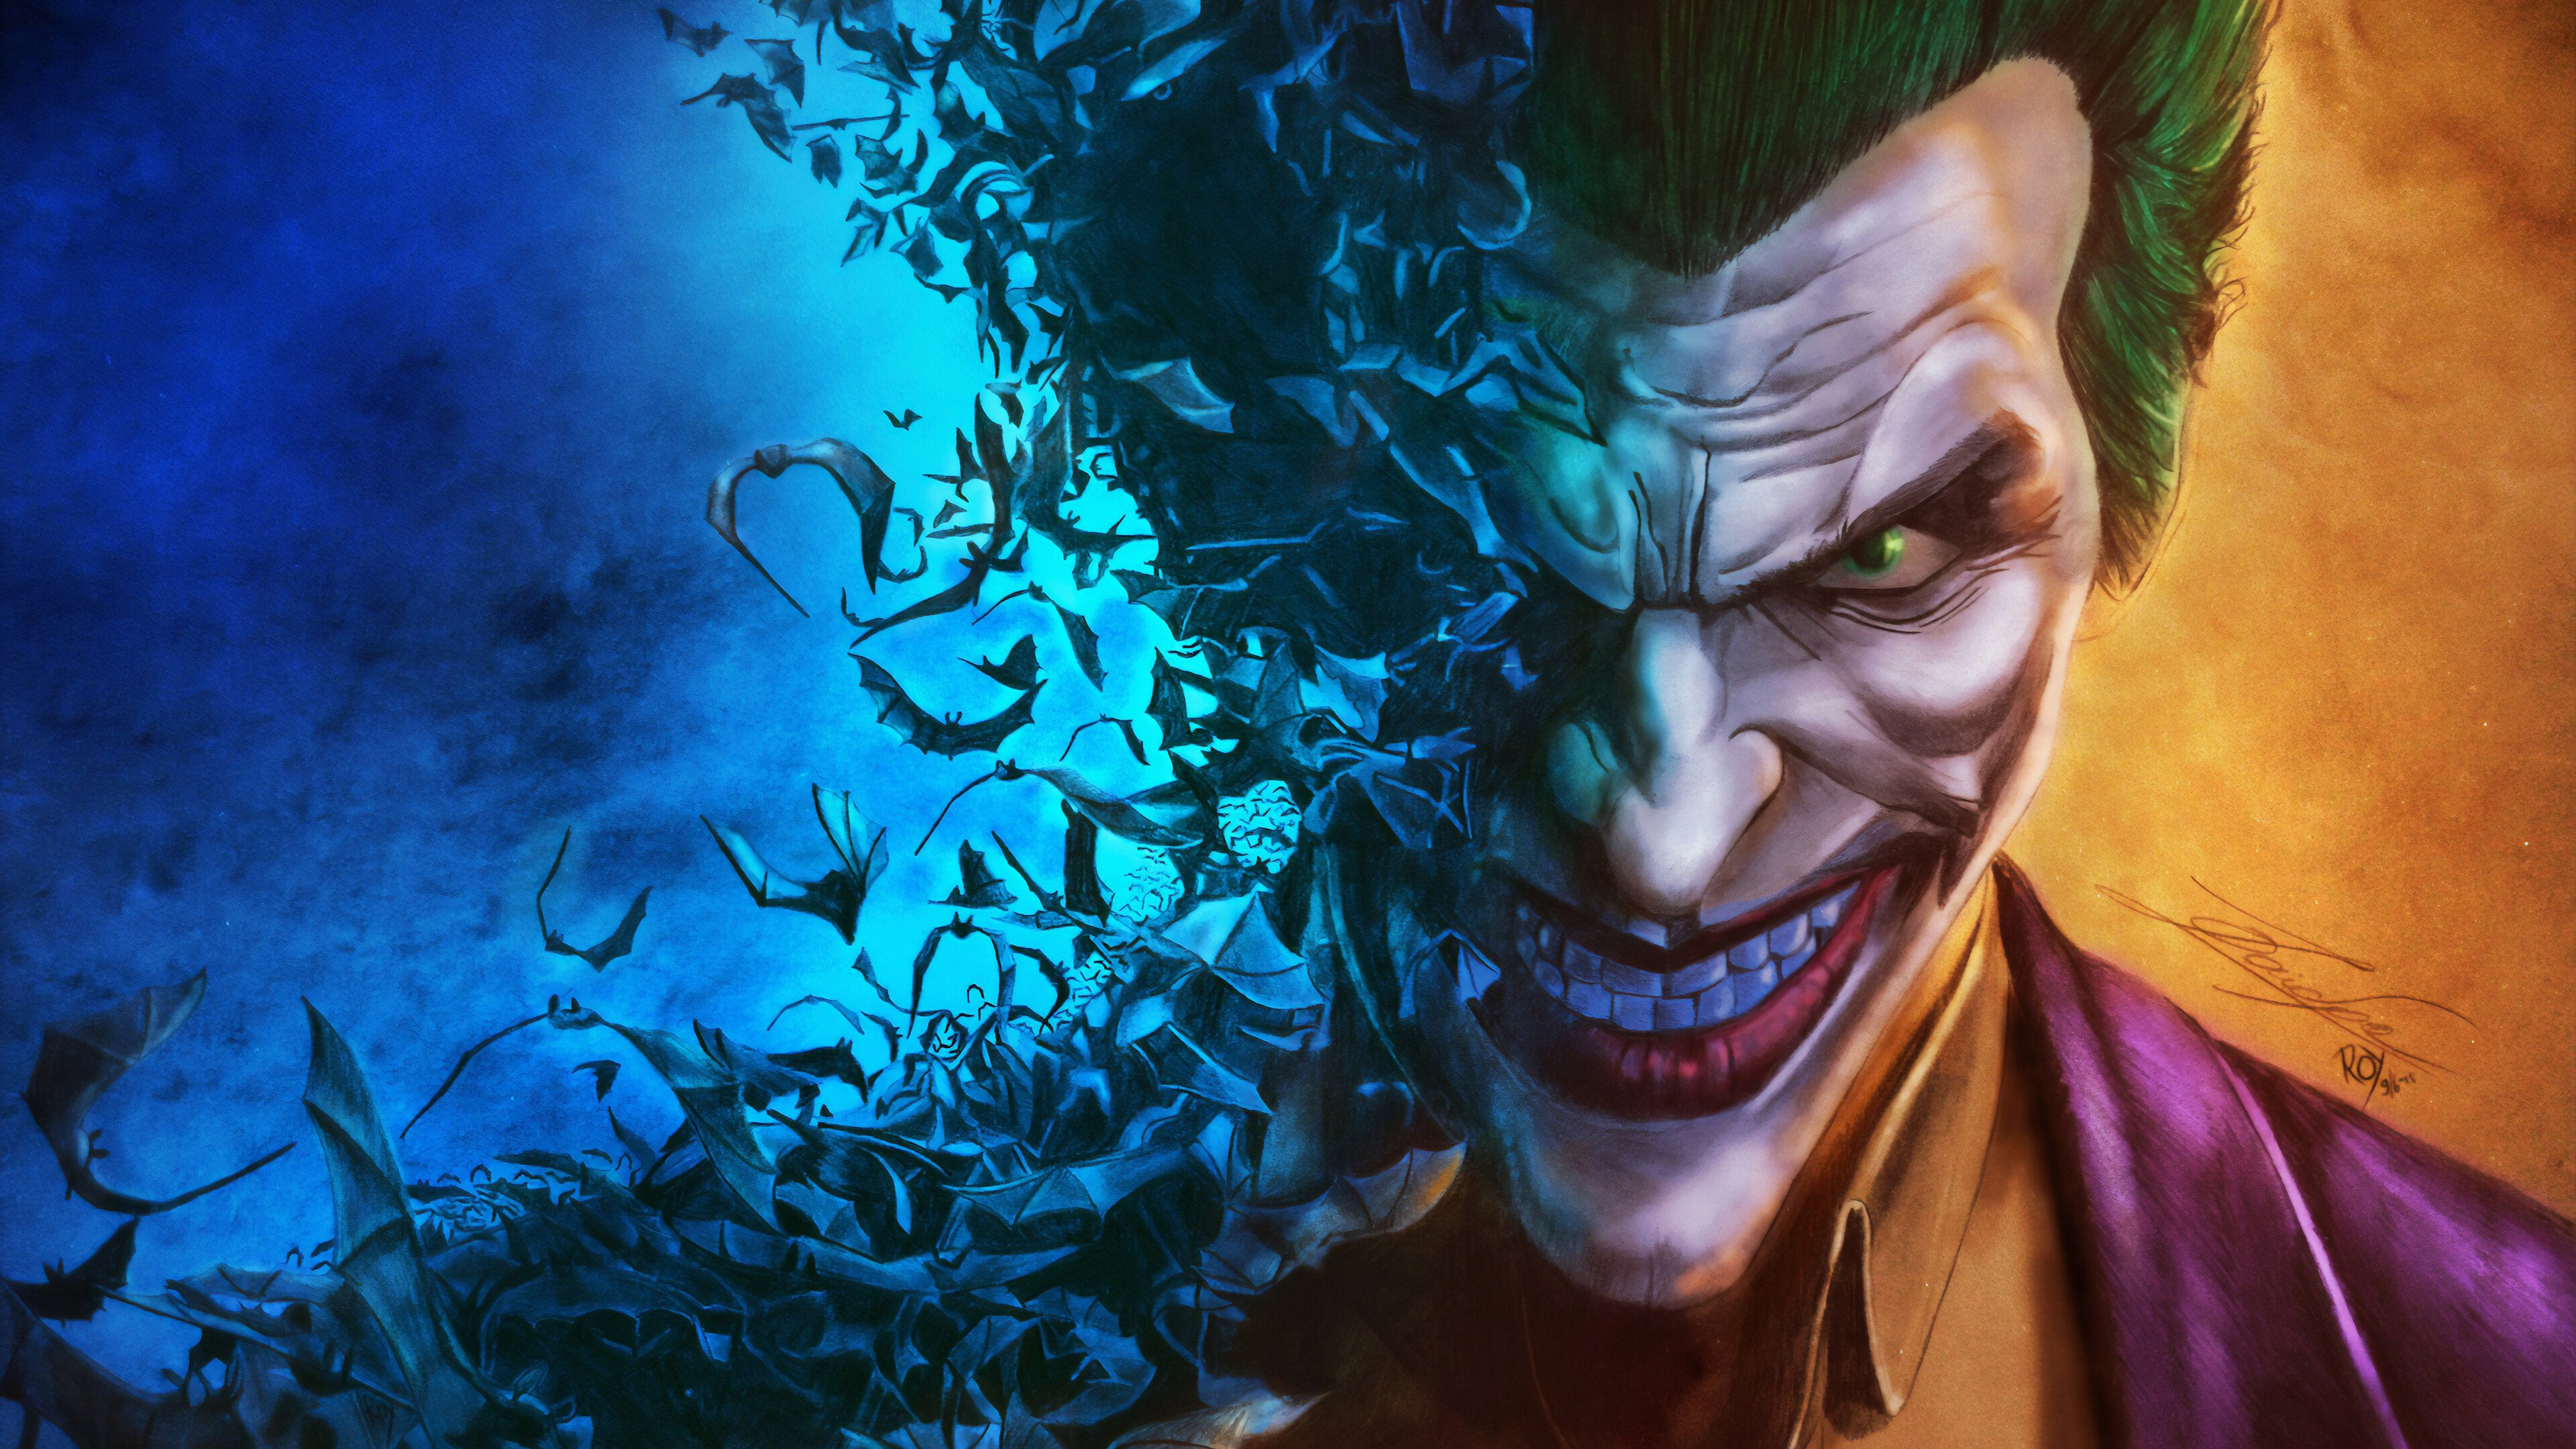 Joker fading into bats Wallpaper 4k Ultra HD ID:4392